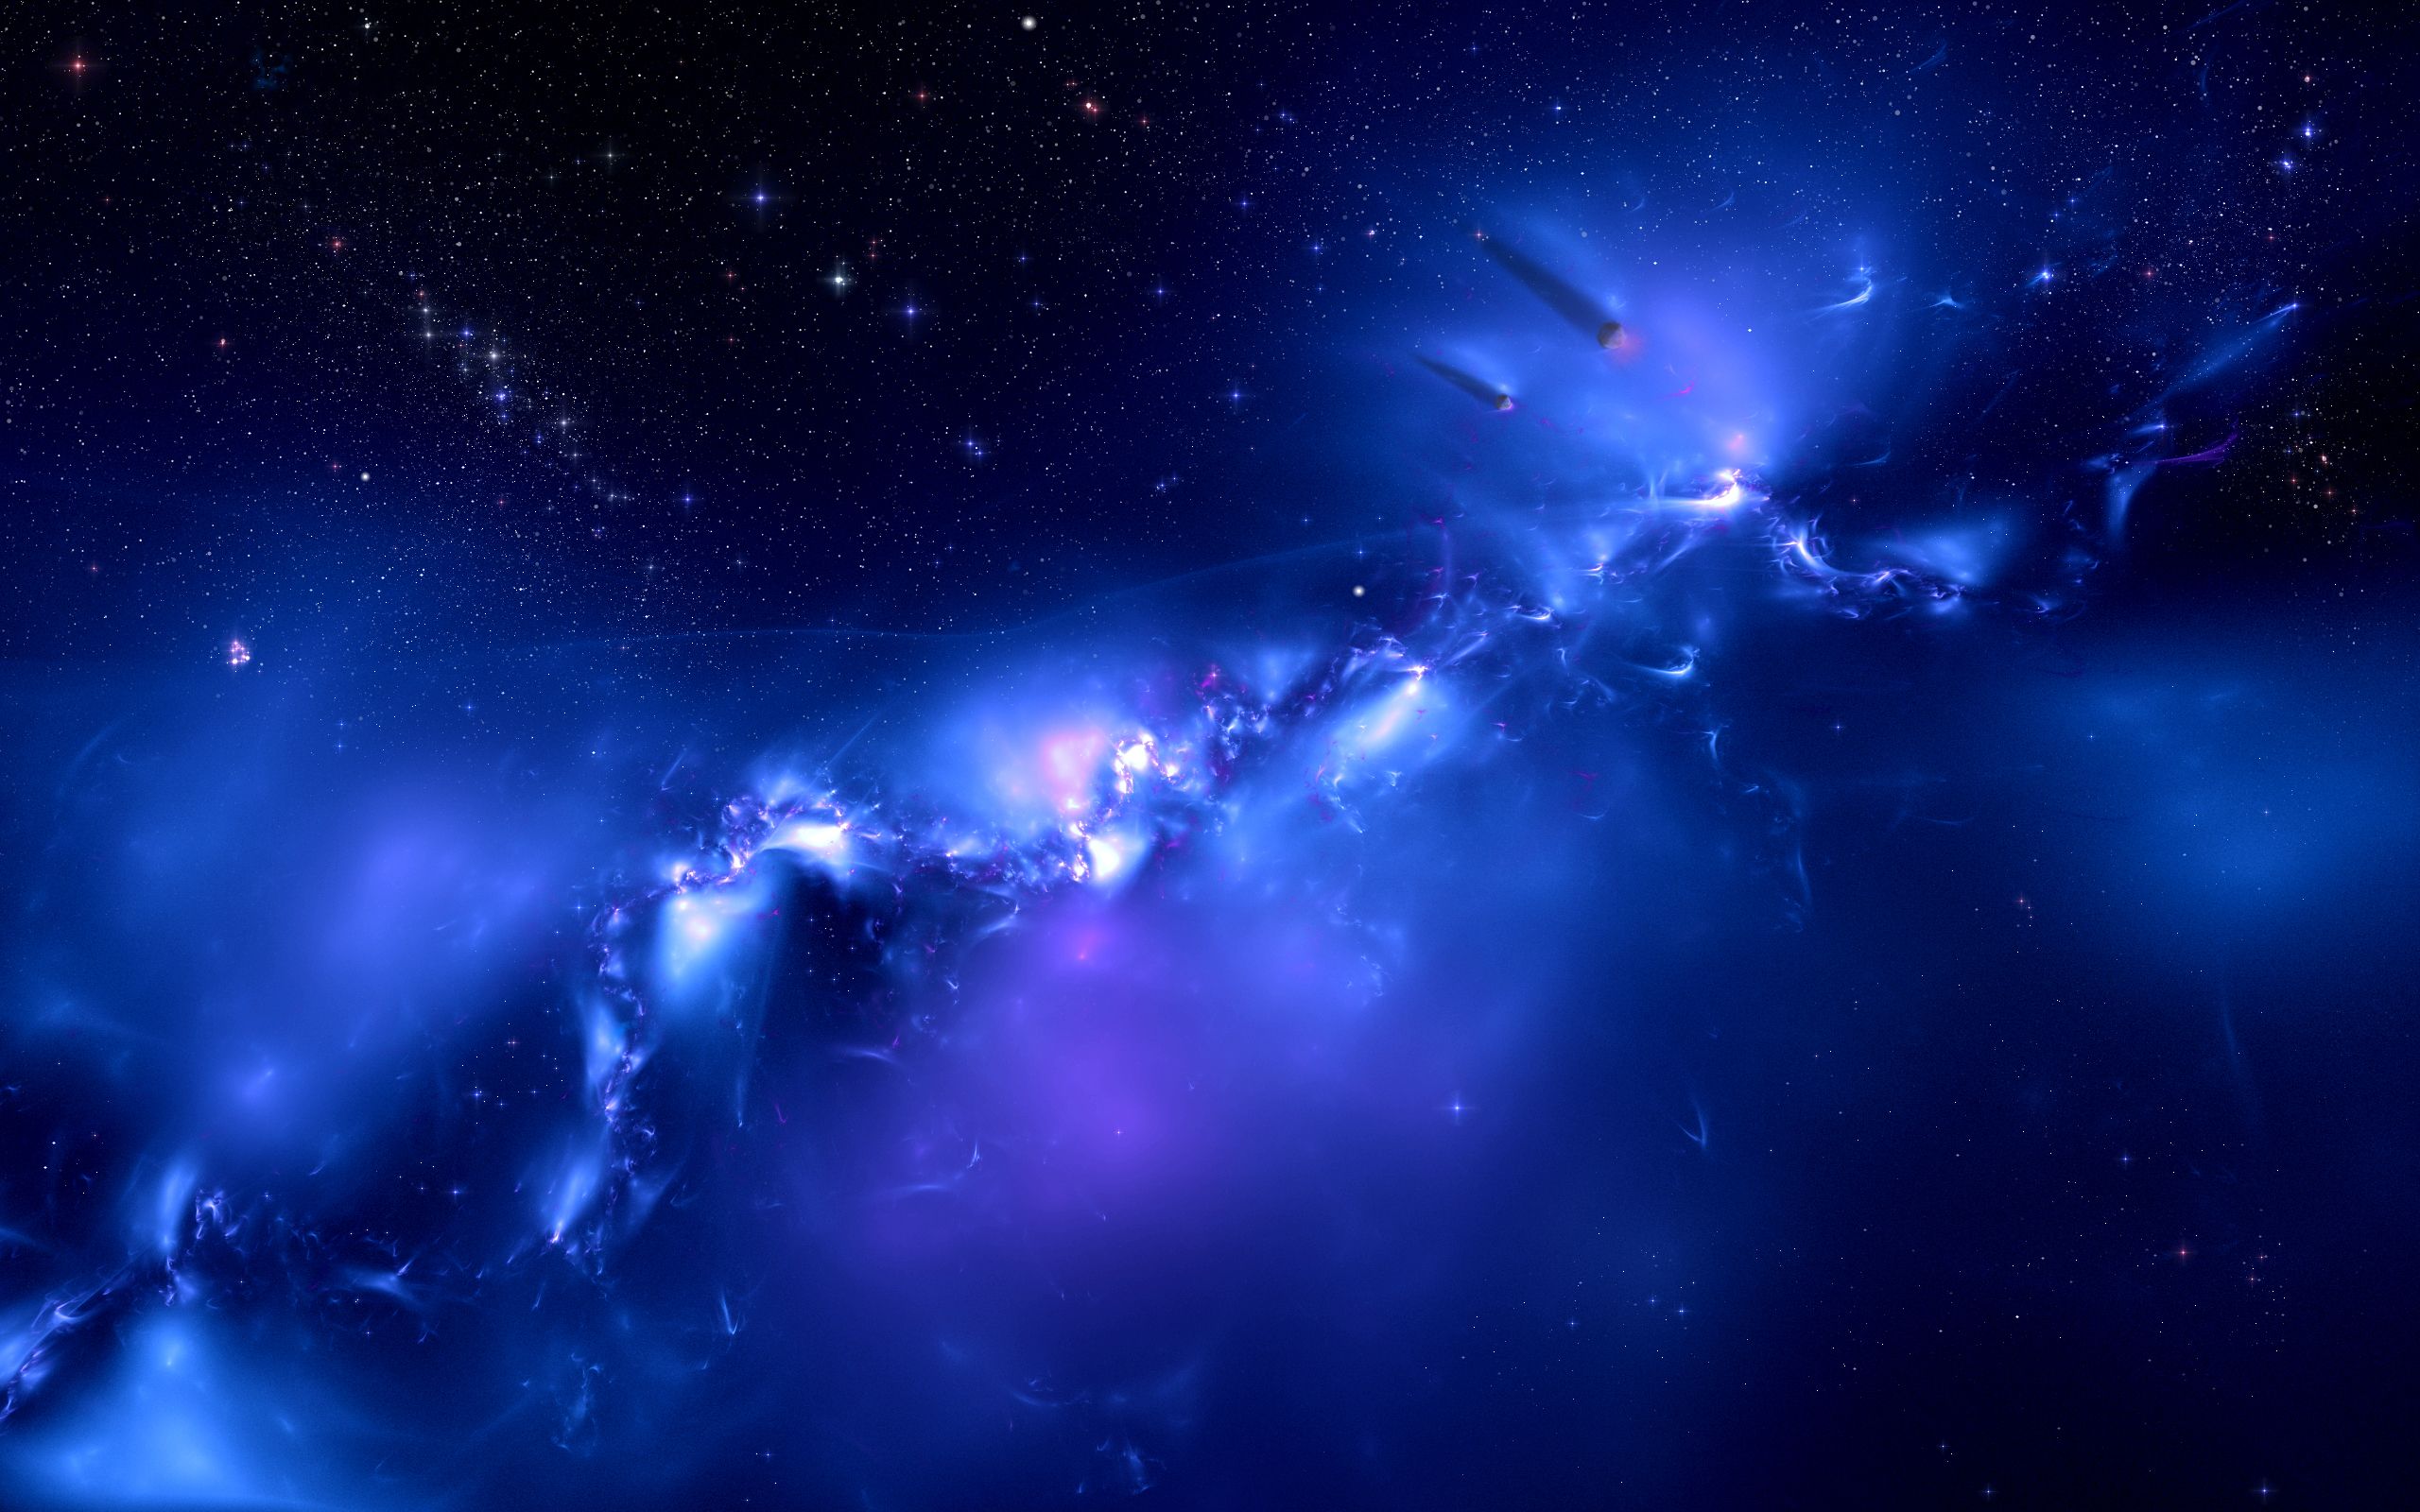  Blaue Hintergrundbild 2560x1600. Kostenlose Hintergrundbilder Blaue Und Weiße Galaxieillustration, Bilder Für Ihren Desktop Und Fotos